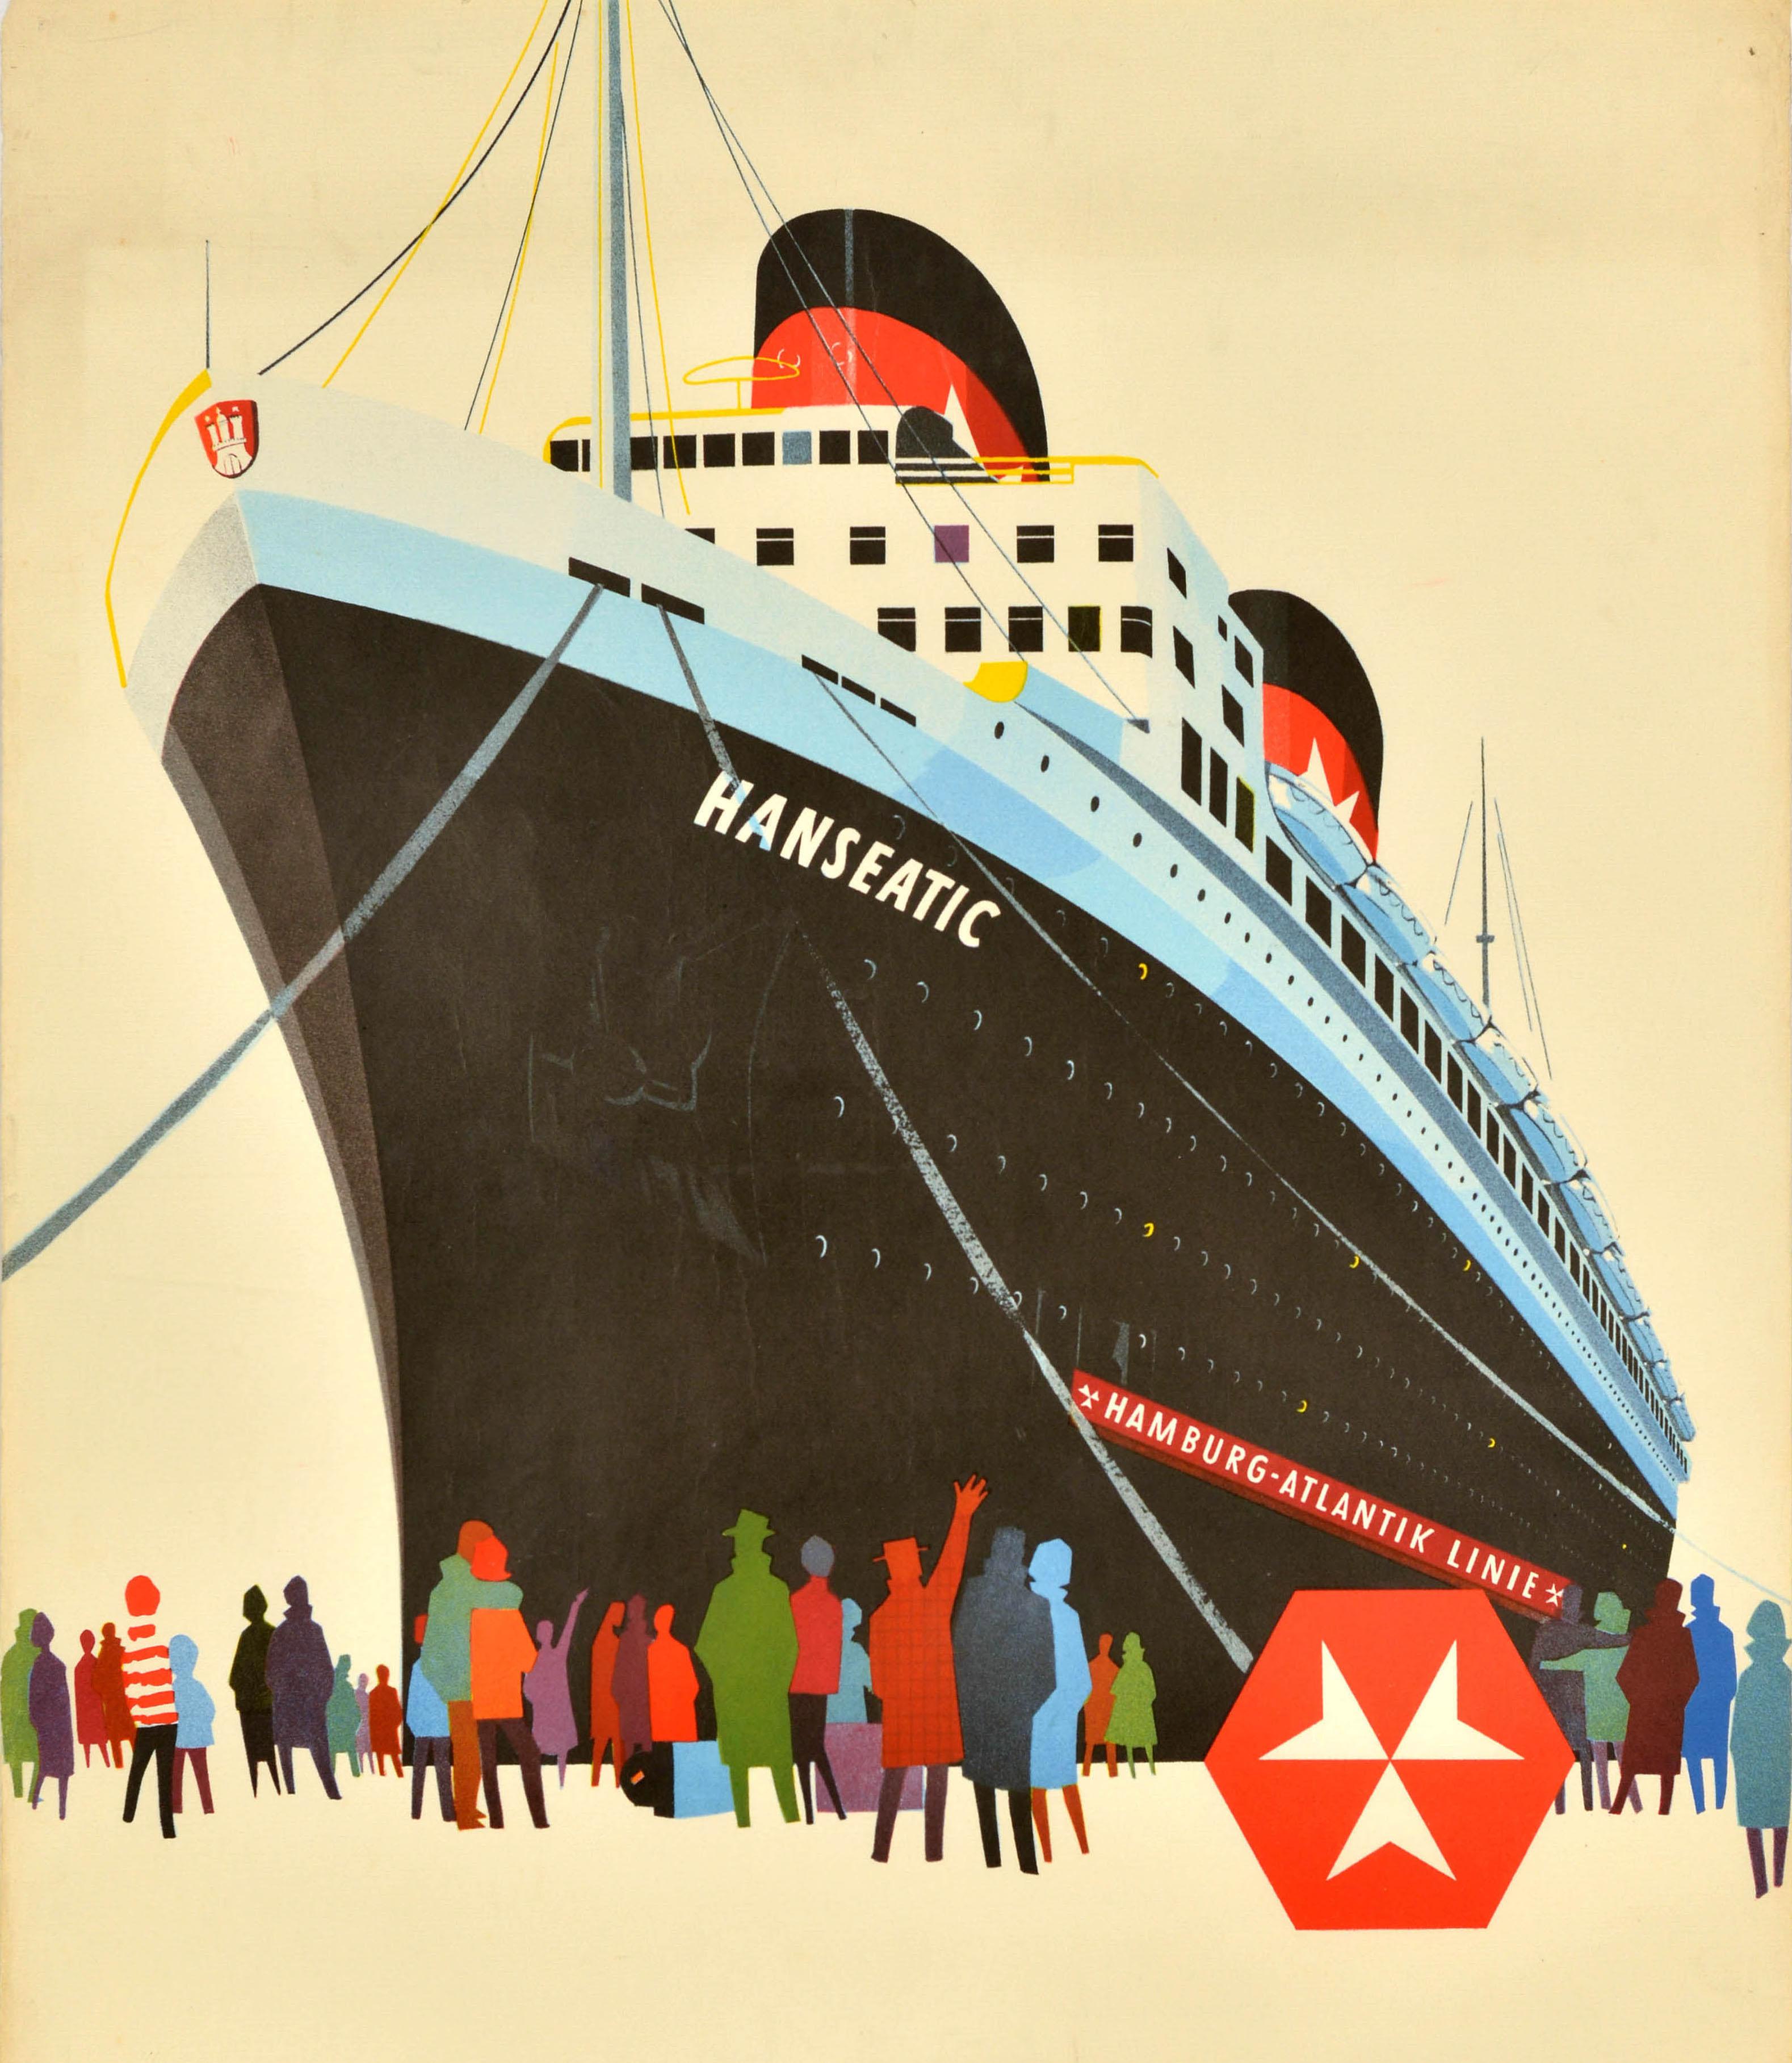 Affiche publicitaire originale de croisière pour Hamburg Atlantic Line / Hamburg Atlantik Linie représentant des silhouettes colorées de personnes saluant et regardant un navire nommé Hanseatic avec le texte en allemand en dessous - das Schiff der